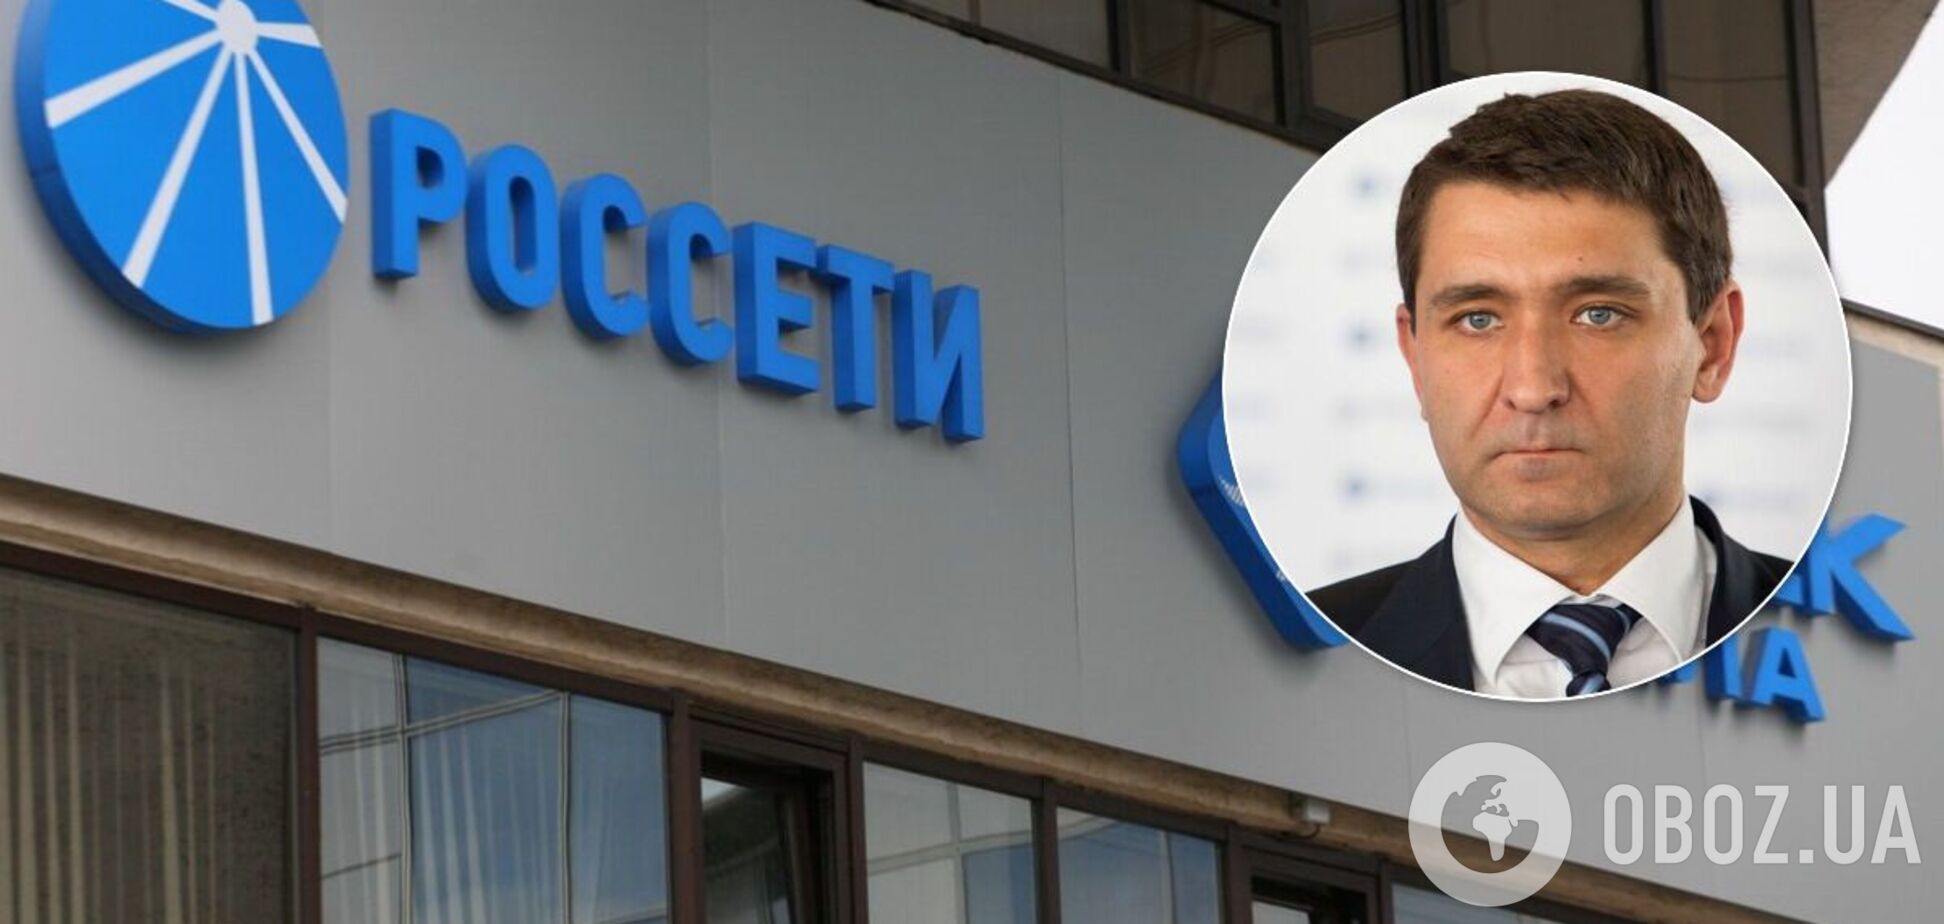 Зять Медведчука очолив велику компанію в Росії